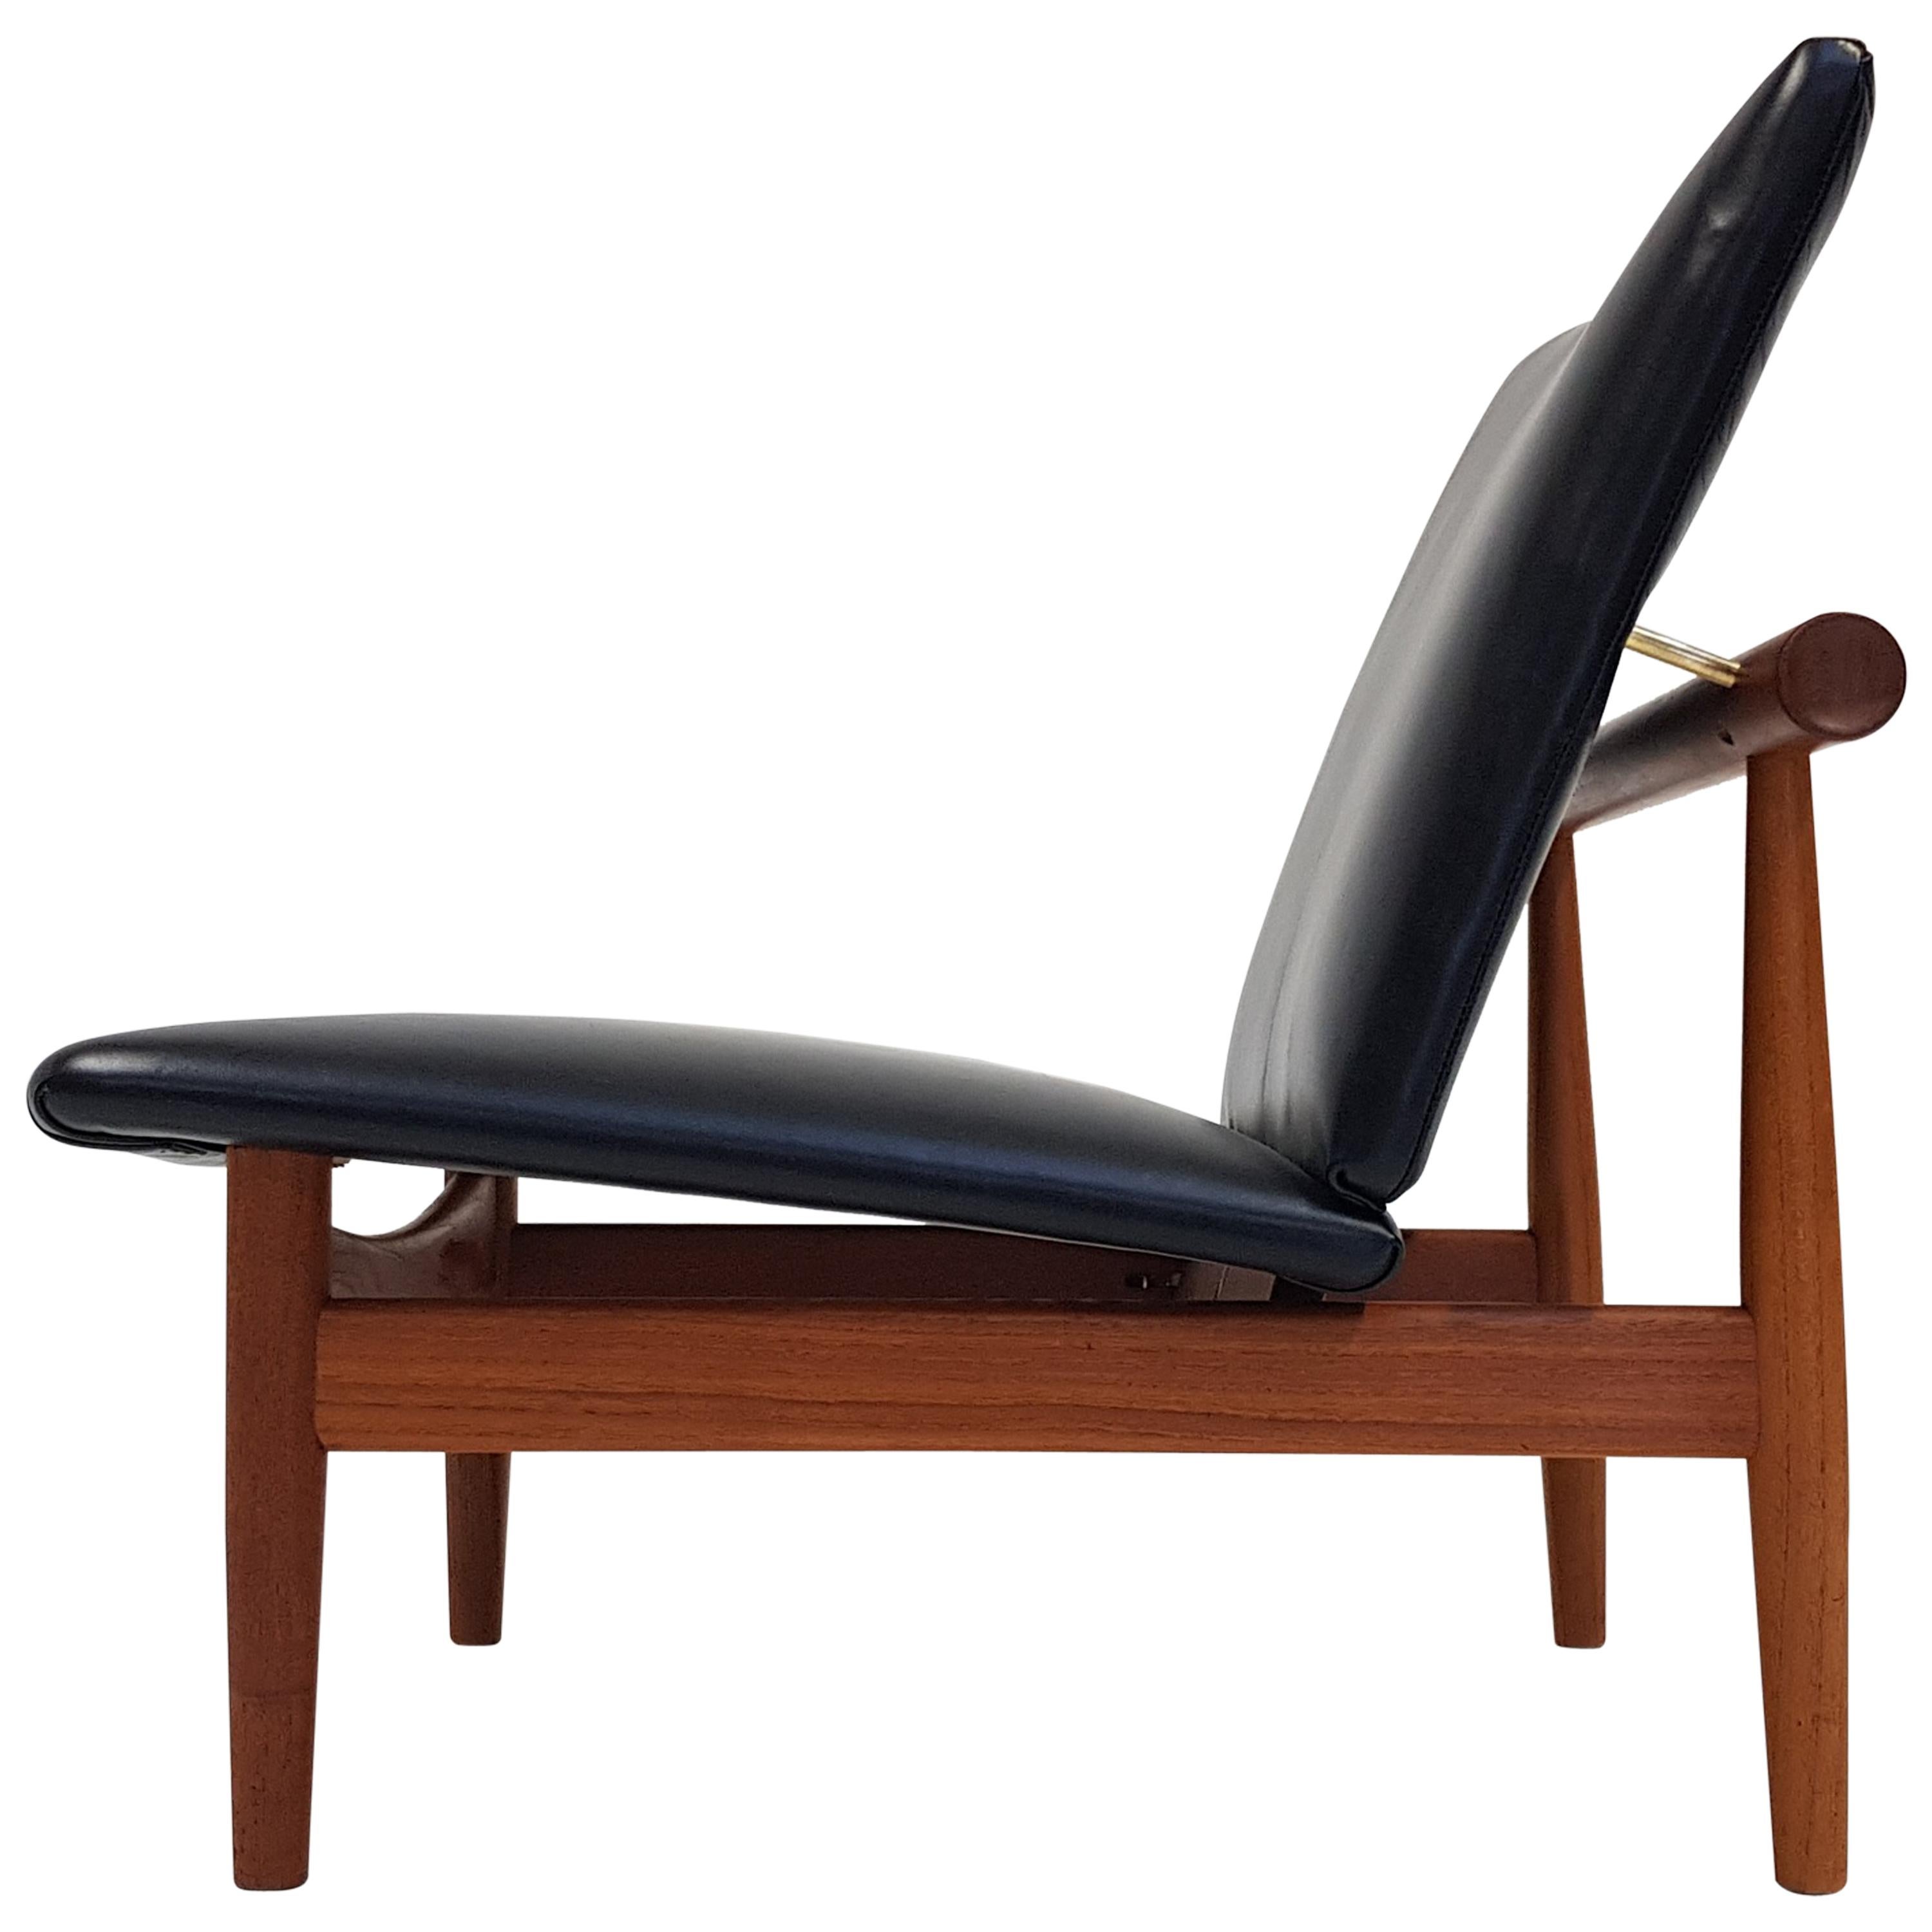 A Finn Juhl Japan chair, Model 137 for France and Daverkosen, Denmark, 1950s